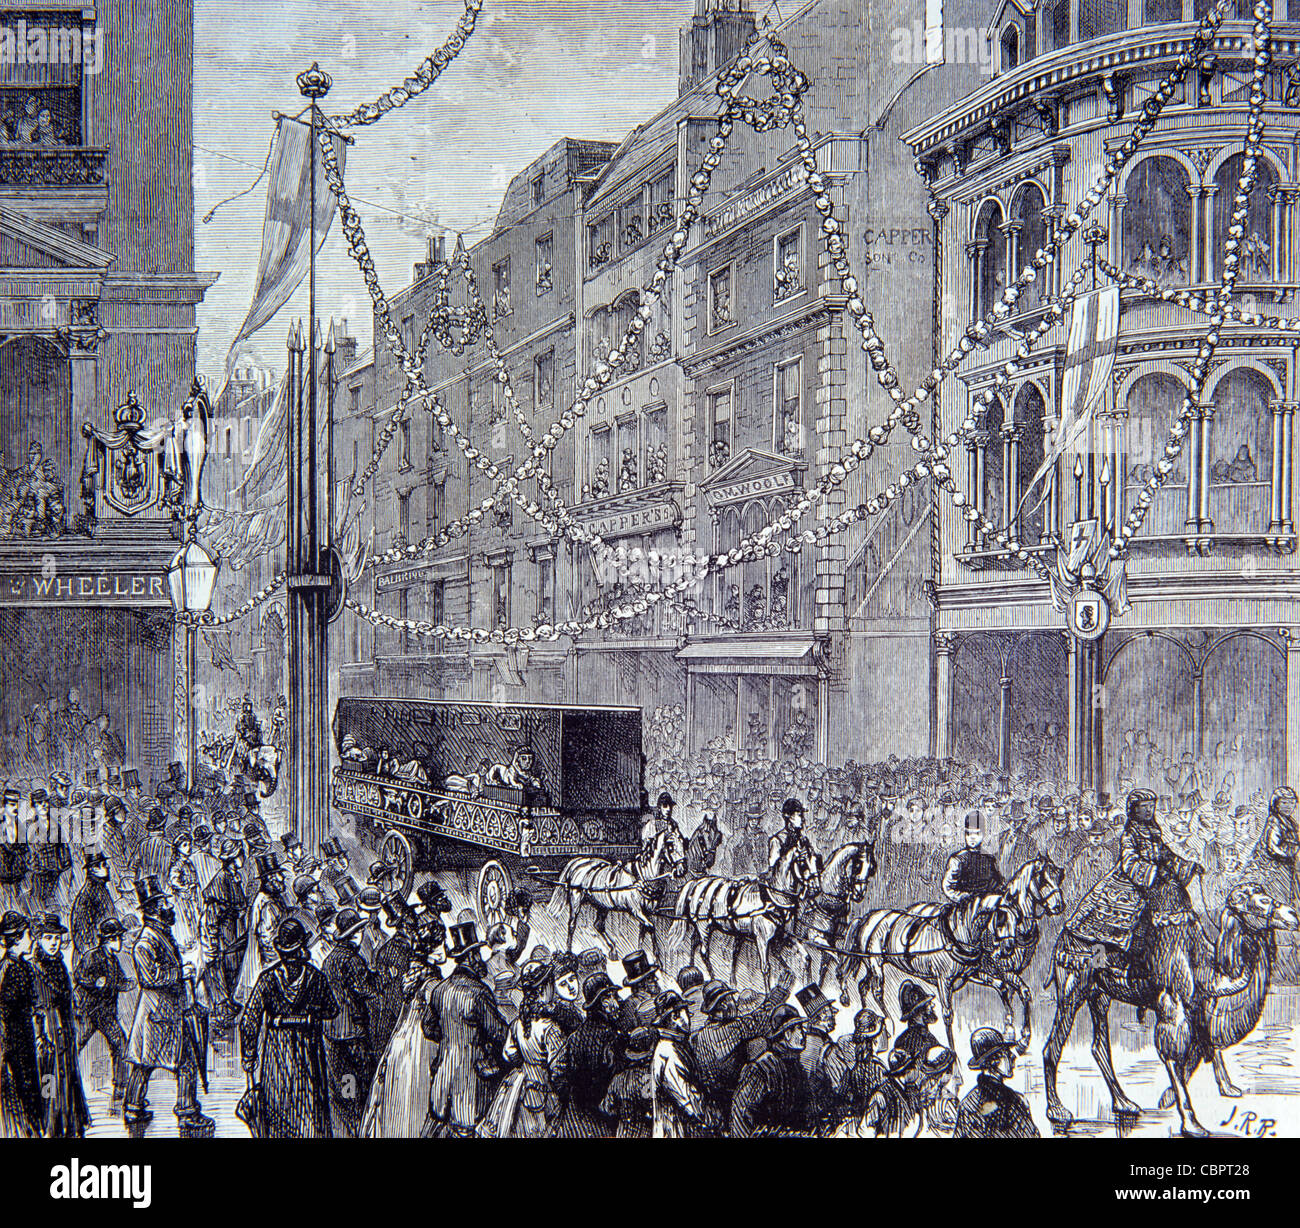 Les foules se rassemblent pour observer l'aiguille de Cleopatra ou l'Obélisque qui traverse les rues de Londres sur Gracechurch Road, Londres, 1878 (c19th Engraving). Illustration vintage Banque D'Images